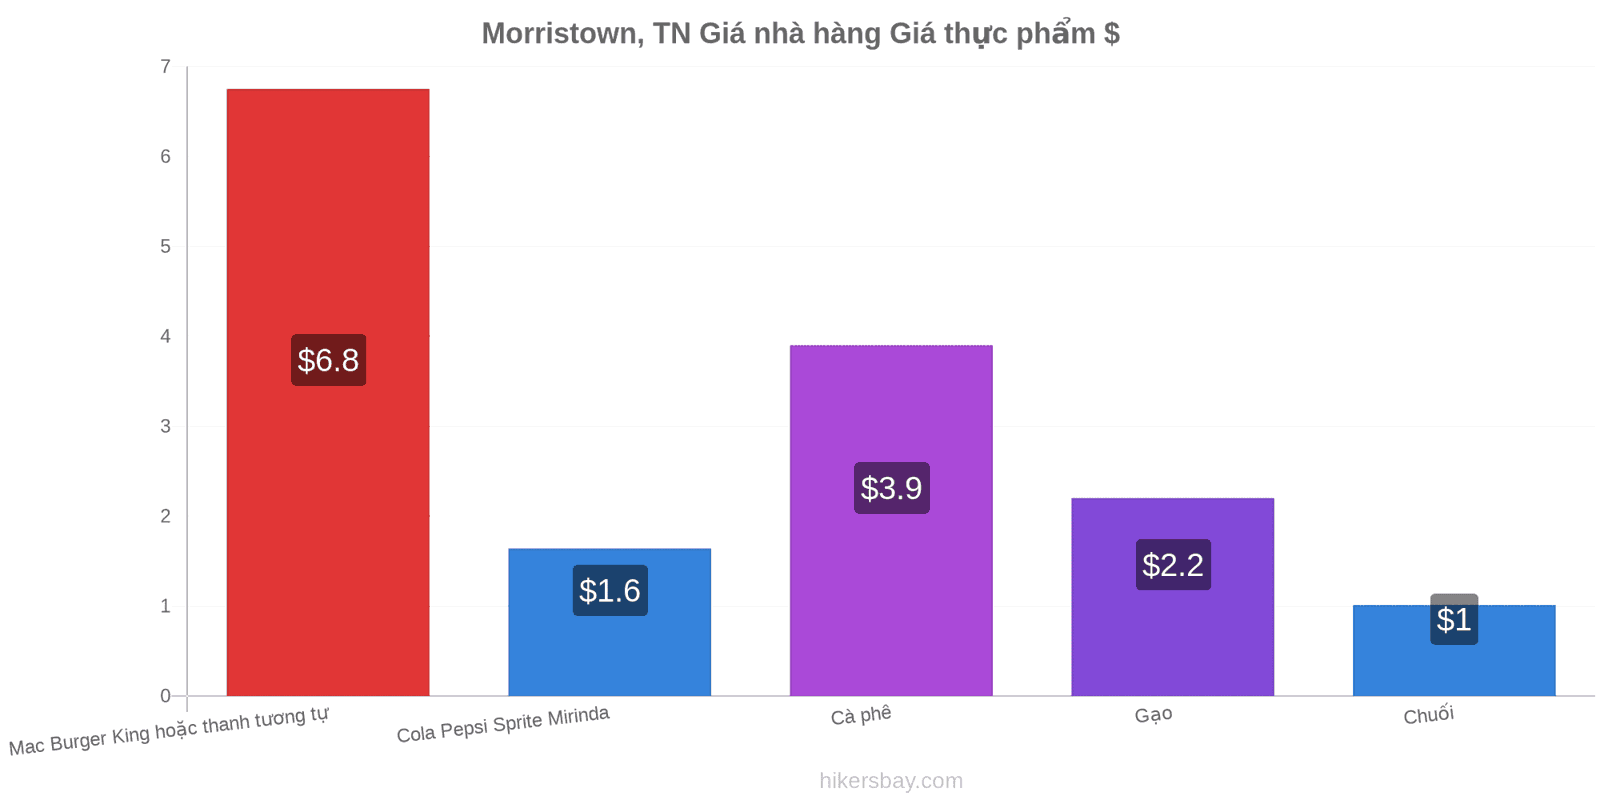 Morristown, TN thay đổi giá cả hikersbay.com